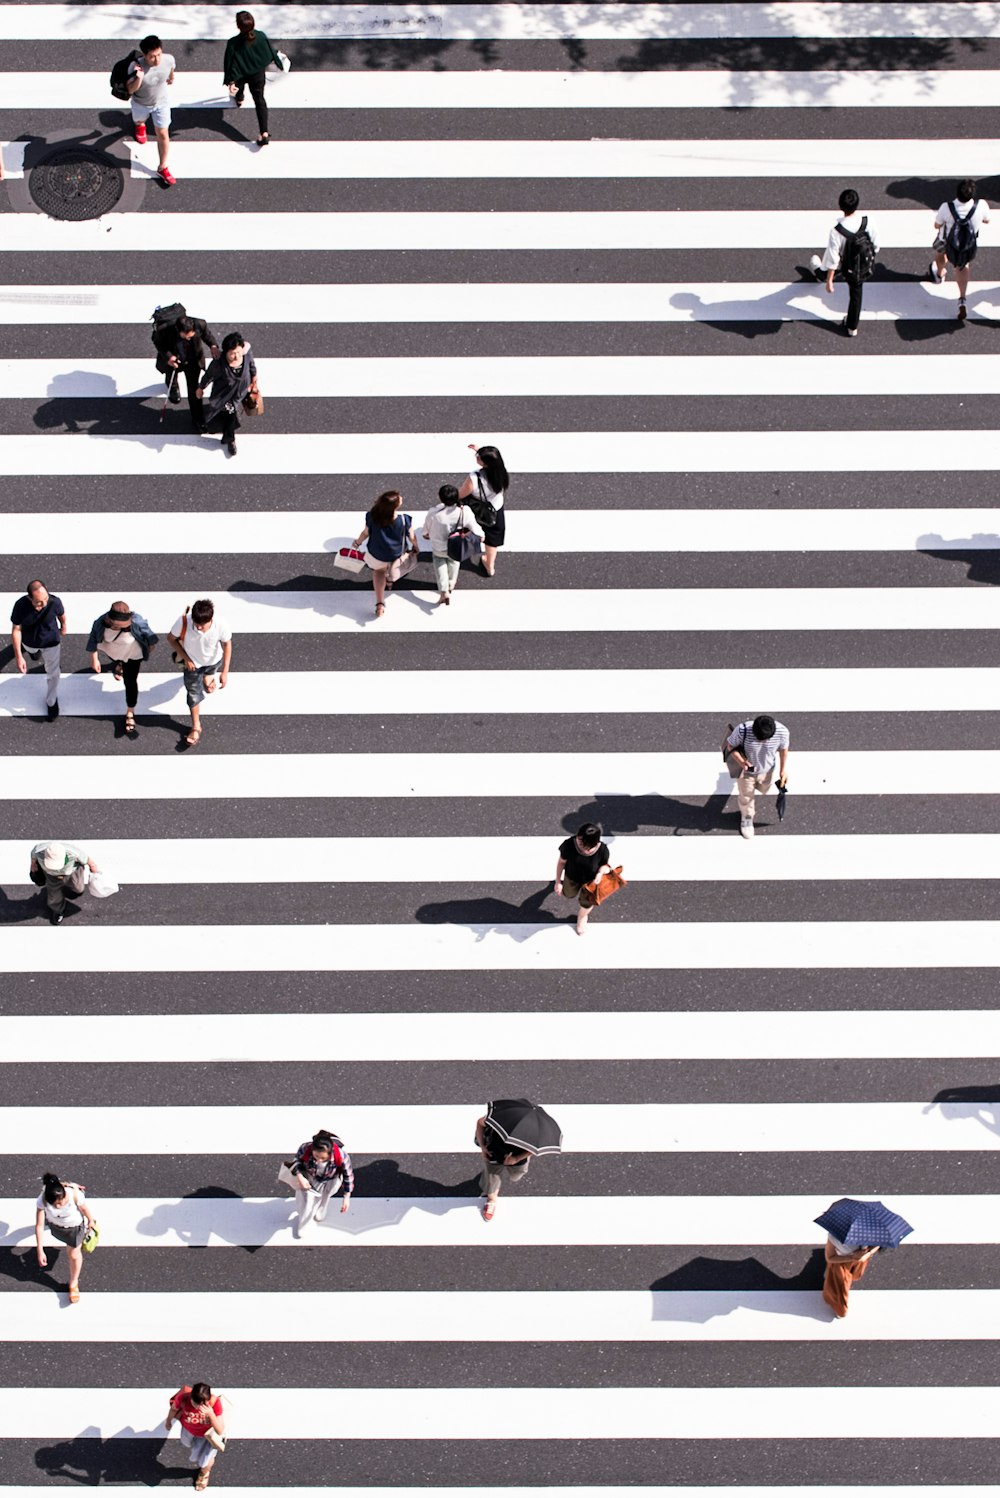 Luftbildfotografie einer Gruppe von Menschen, die auf einer grau-weißen Fußgängerzone spazieren gehen